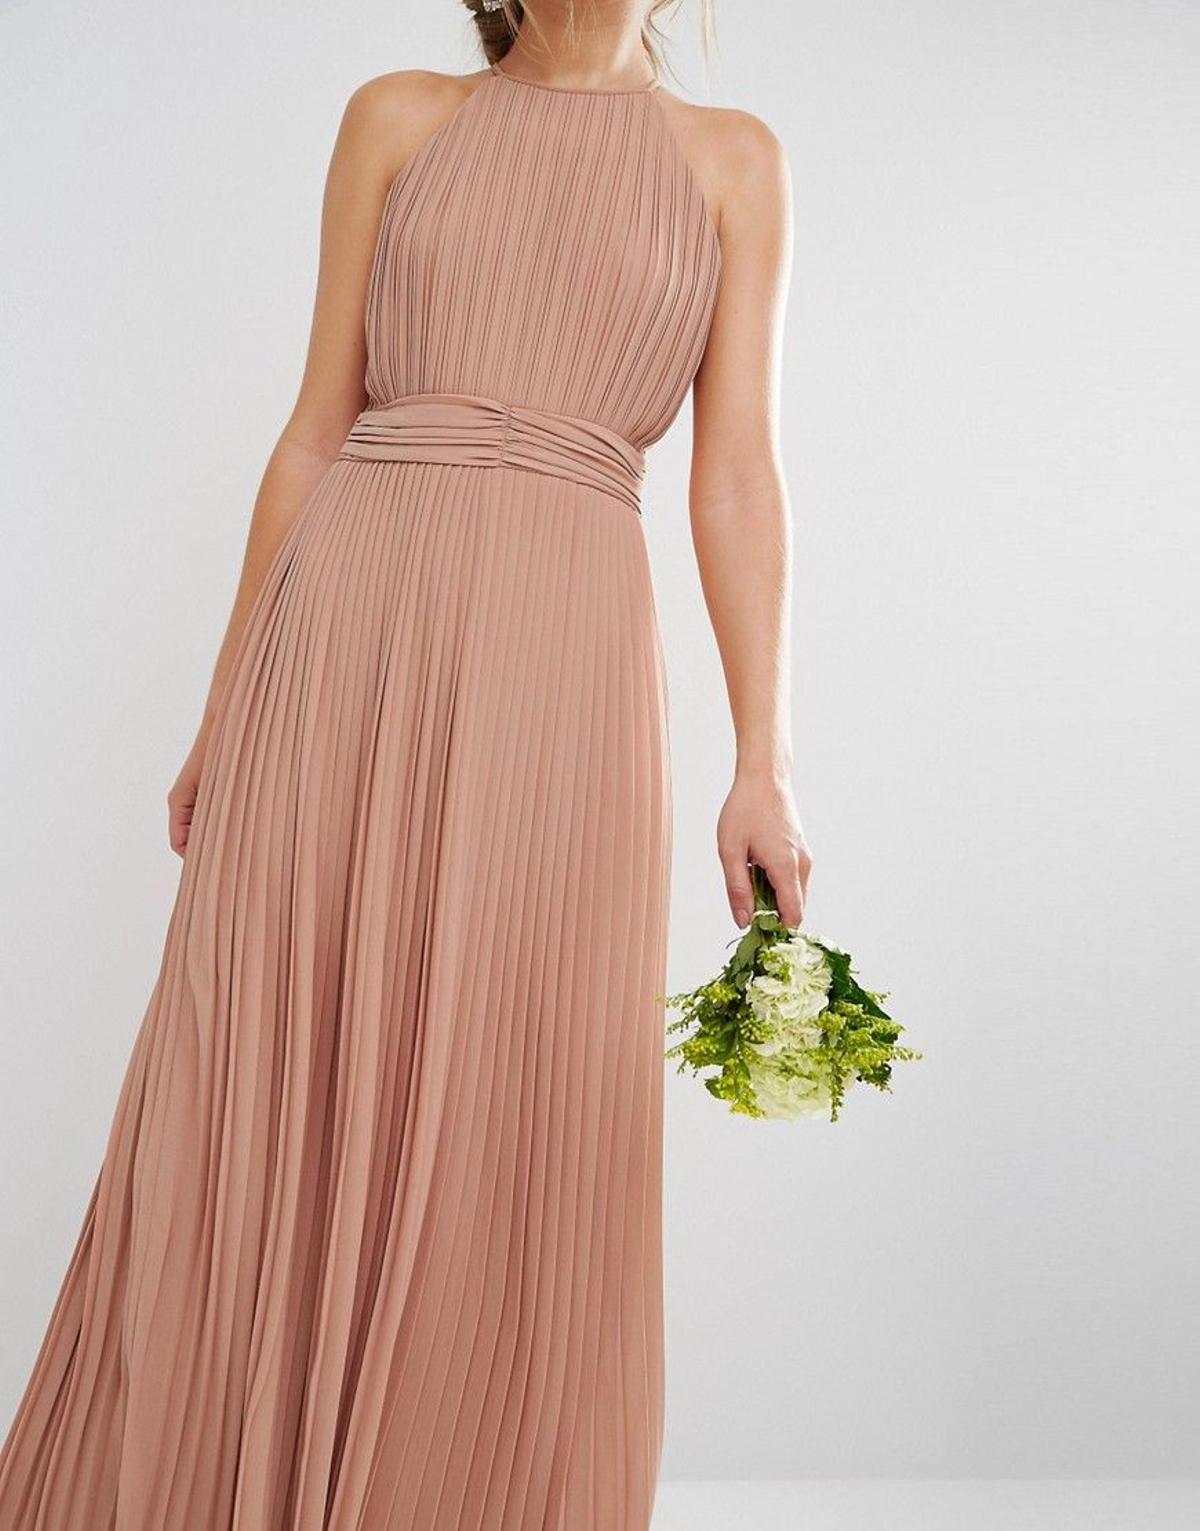 La perfecta invitada 'low cost', vestido con escote halter de Asos (67,99€)